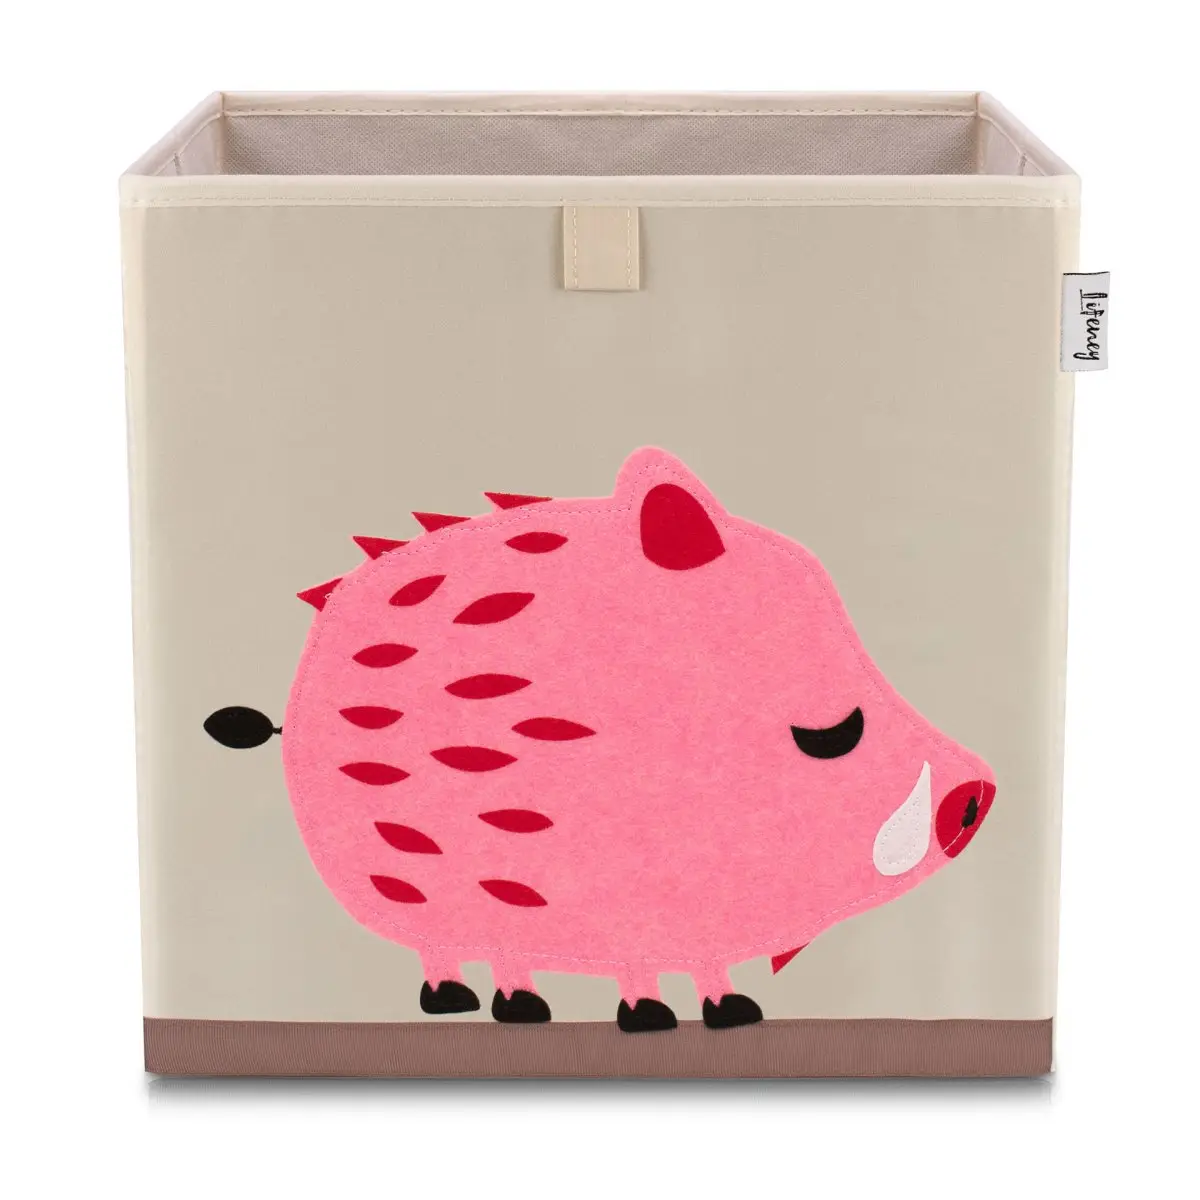 Stachelschwein Aufbewahrungsbox Lifeney